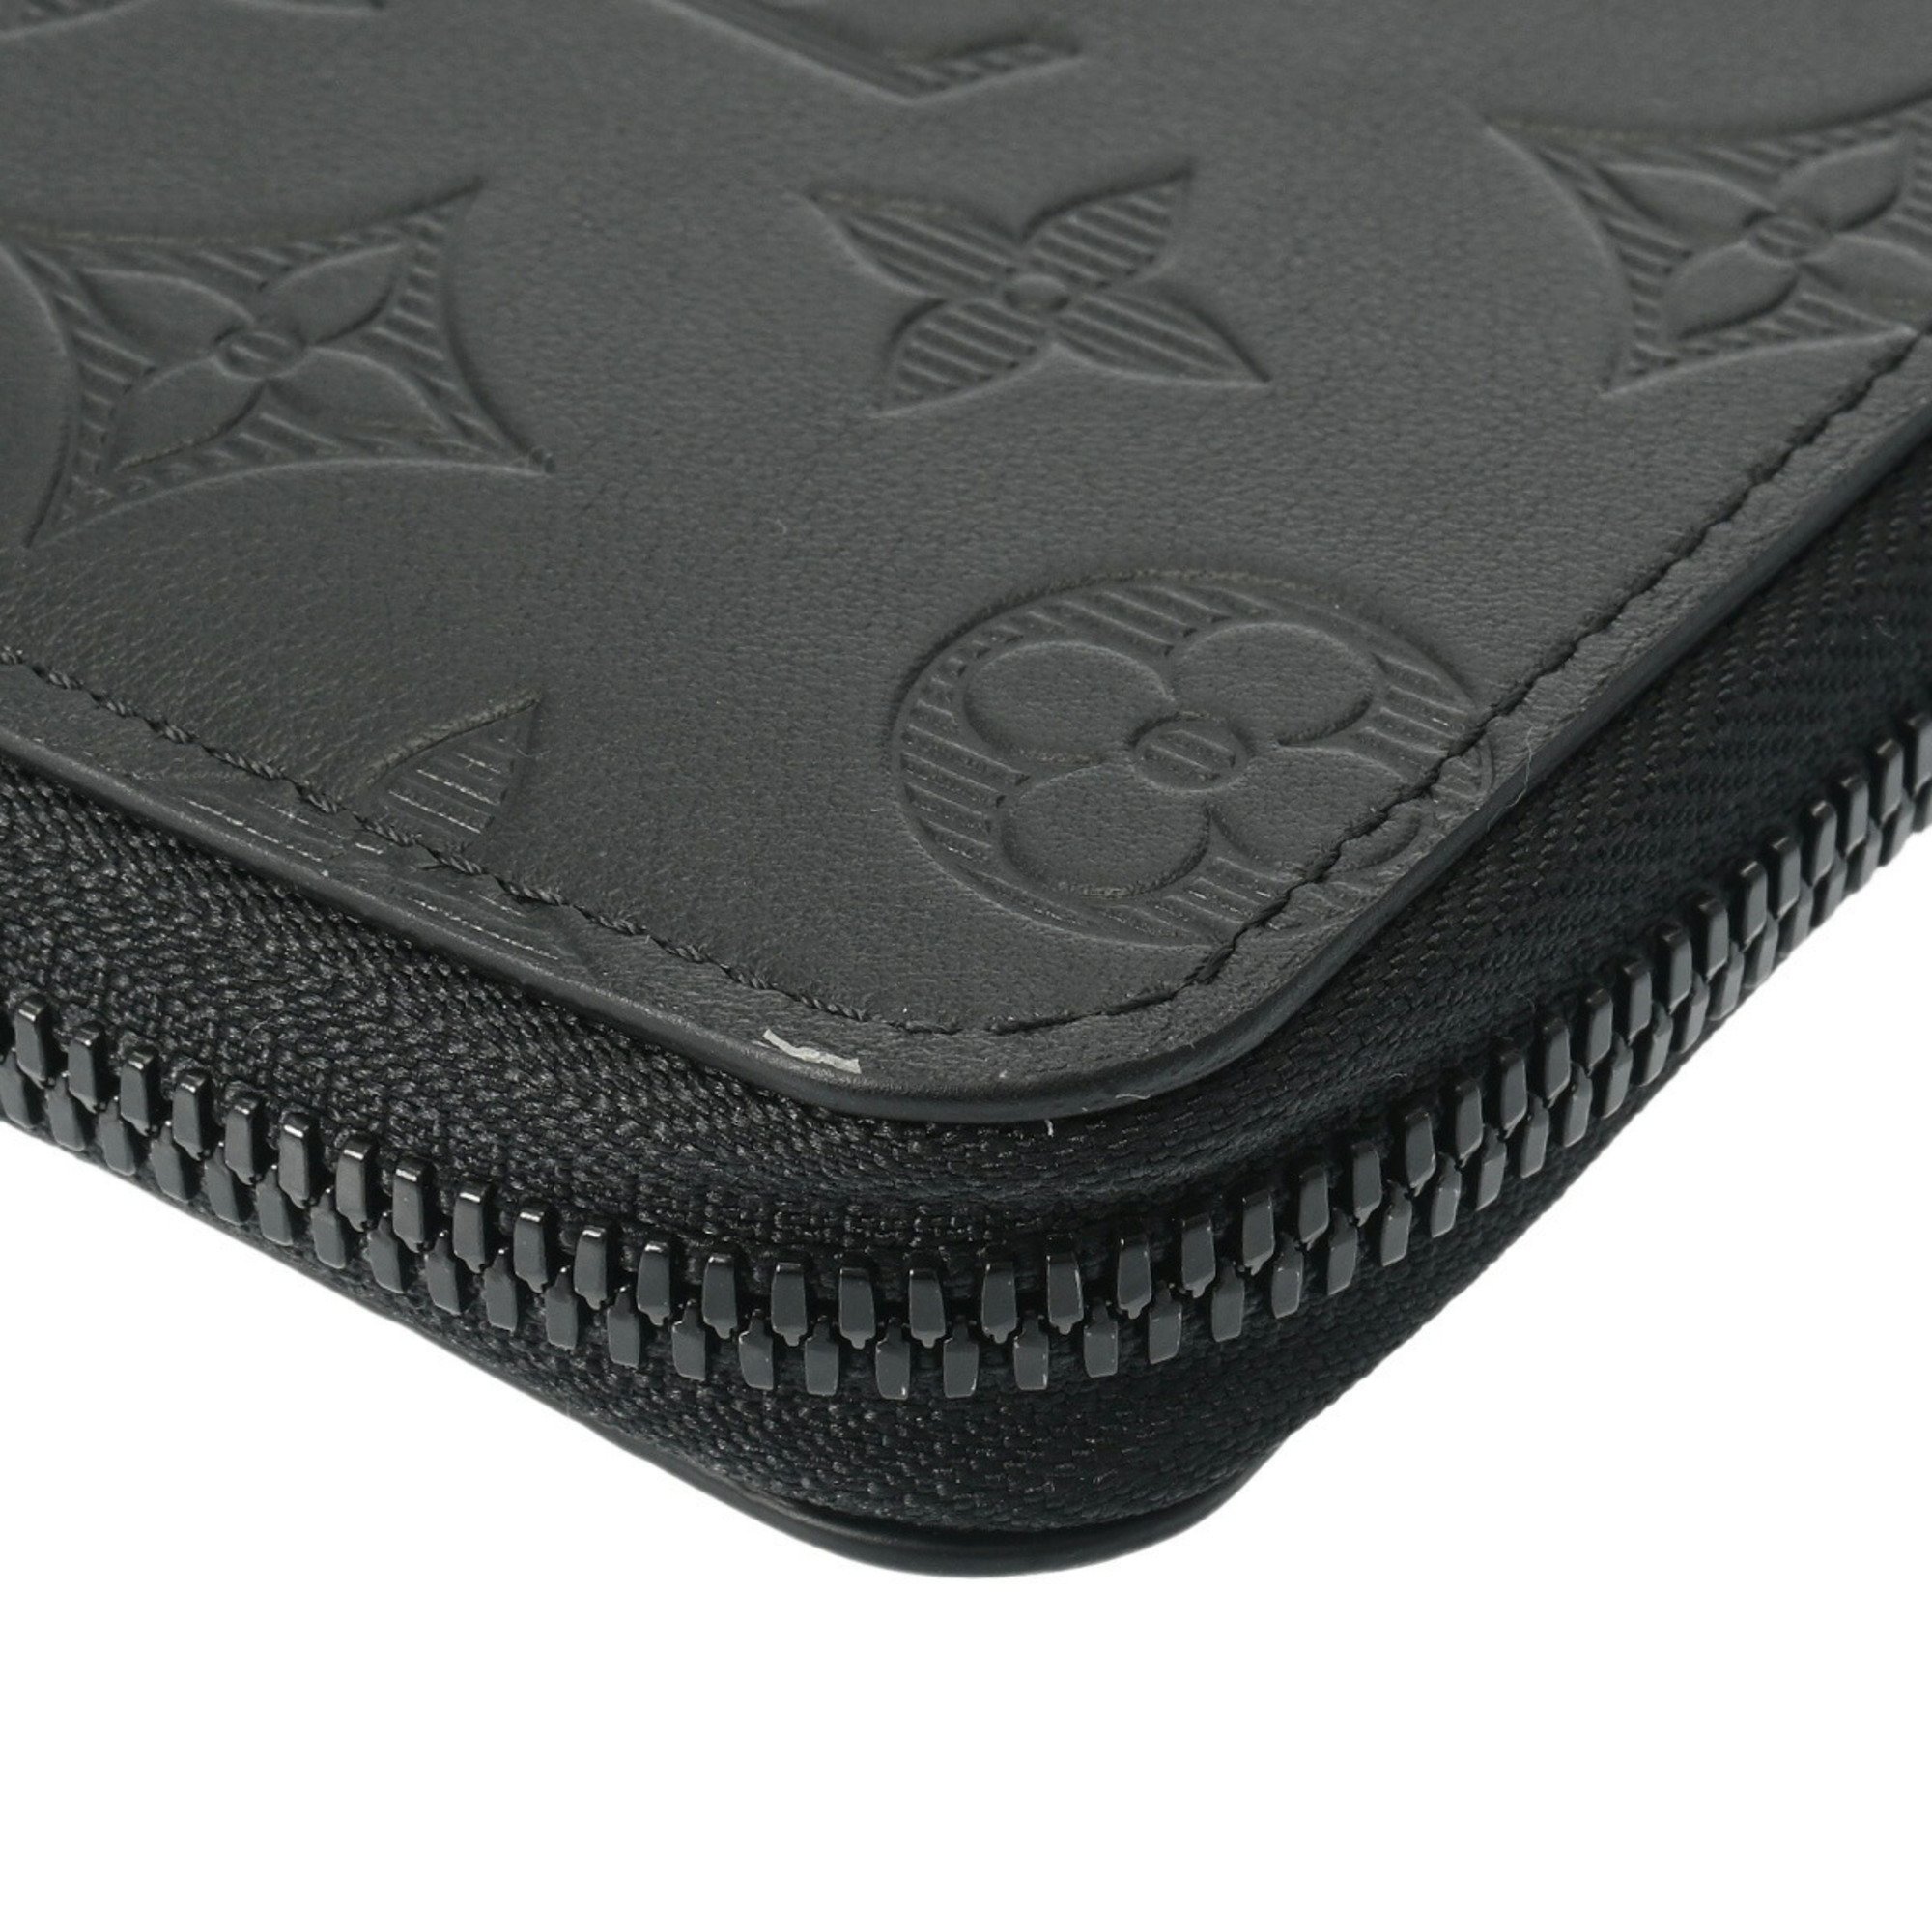 LOUIS VUITTON Louis Vuitton Monogram Shadow Zippy Wallet Vertical Black M62902 Men's Leather Long